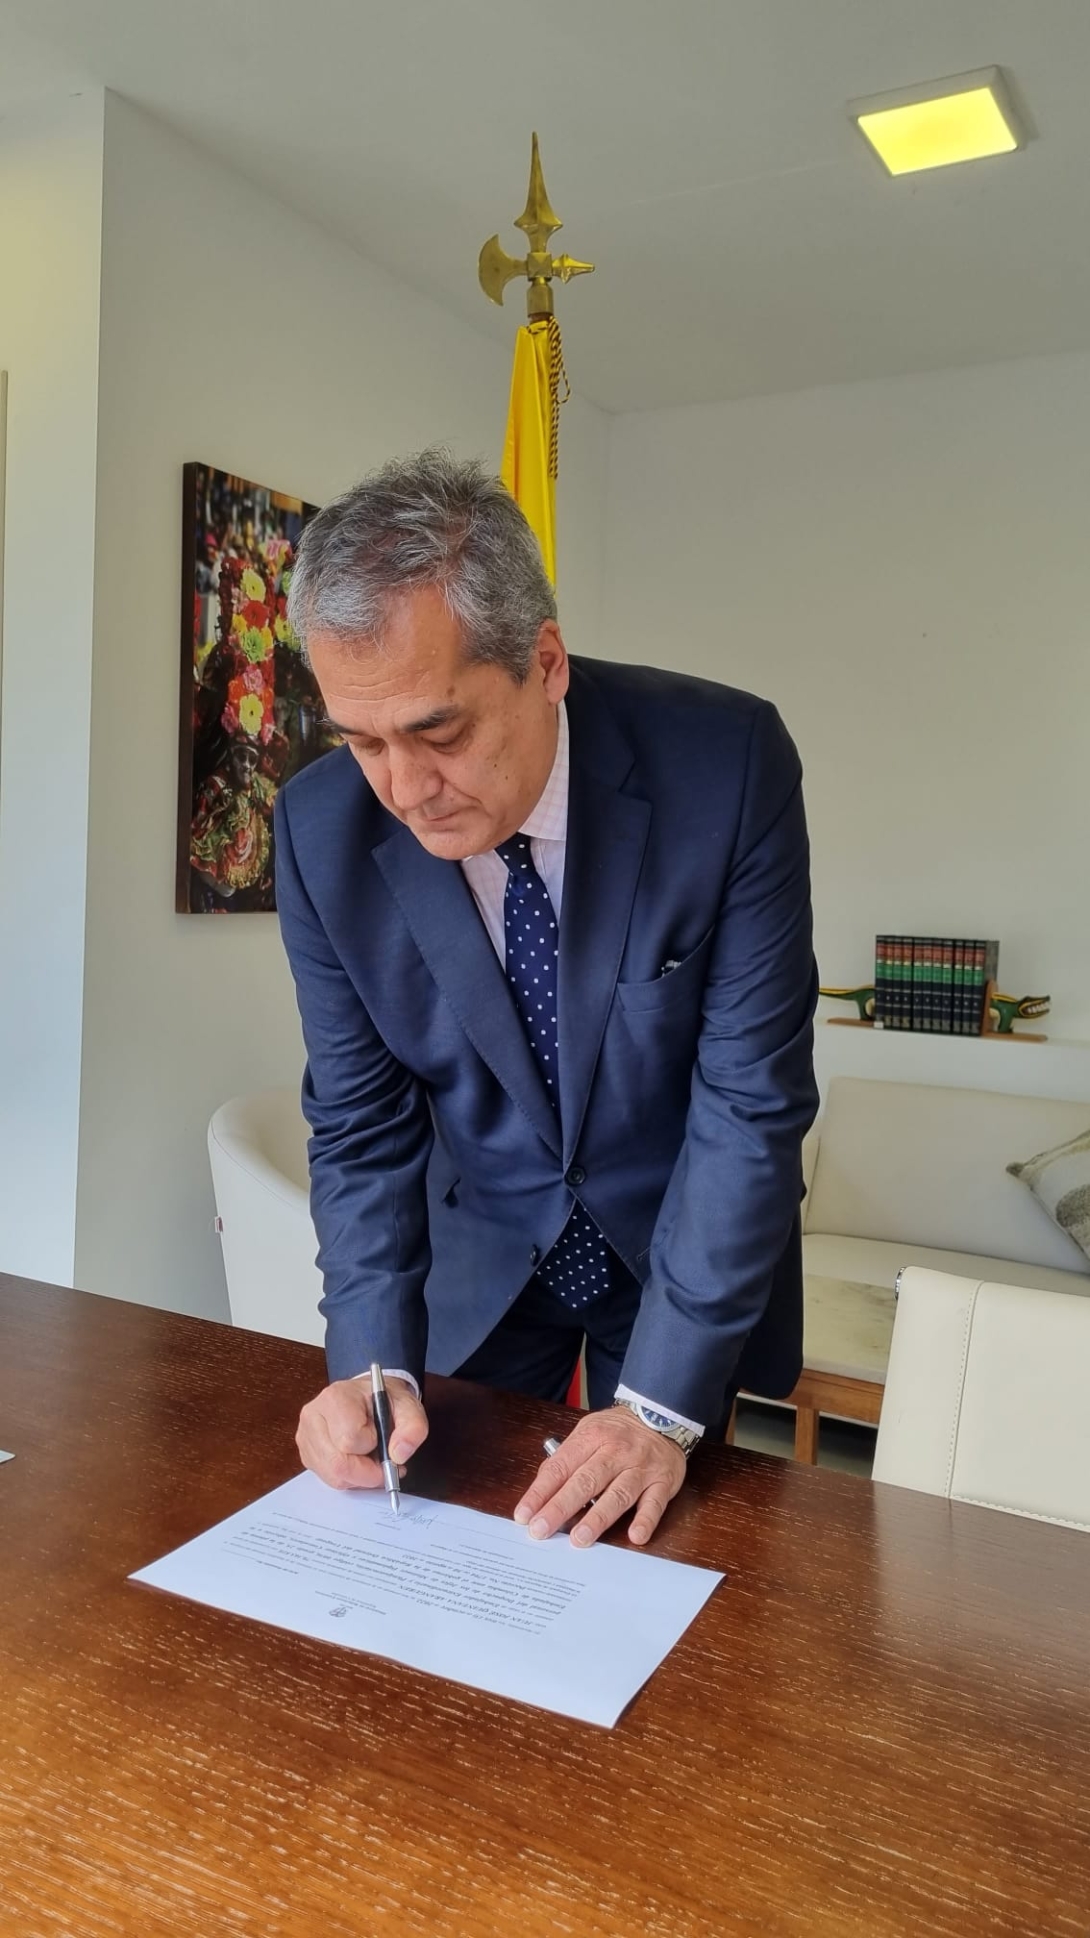 El Embajador de Carrera Diplomática y Consular, Juan José Quintana Aranguren, tomó posesión como Embajador ante la República Oriental del Uruguay